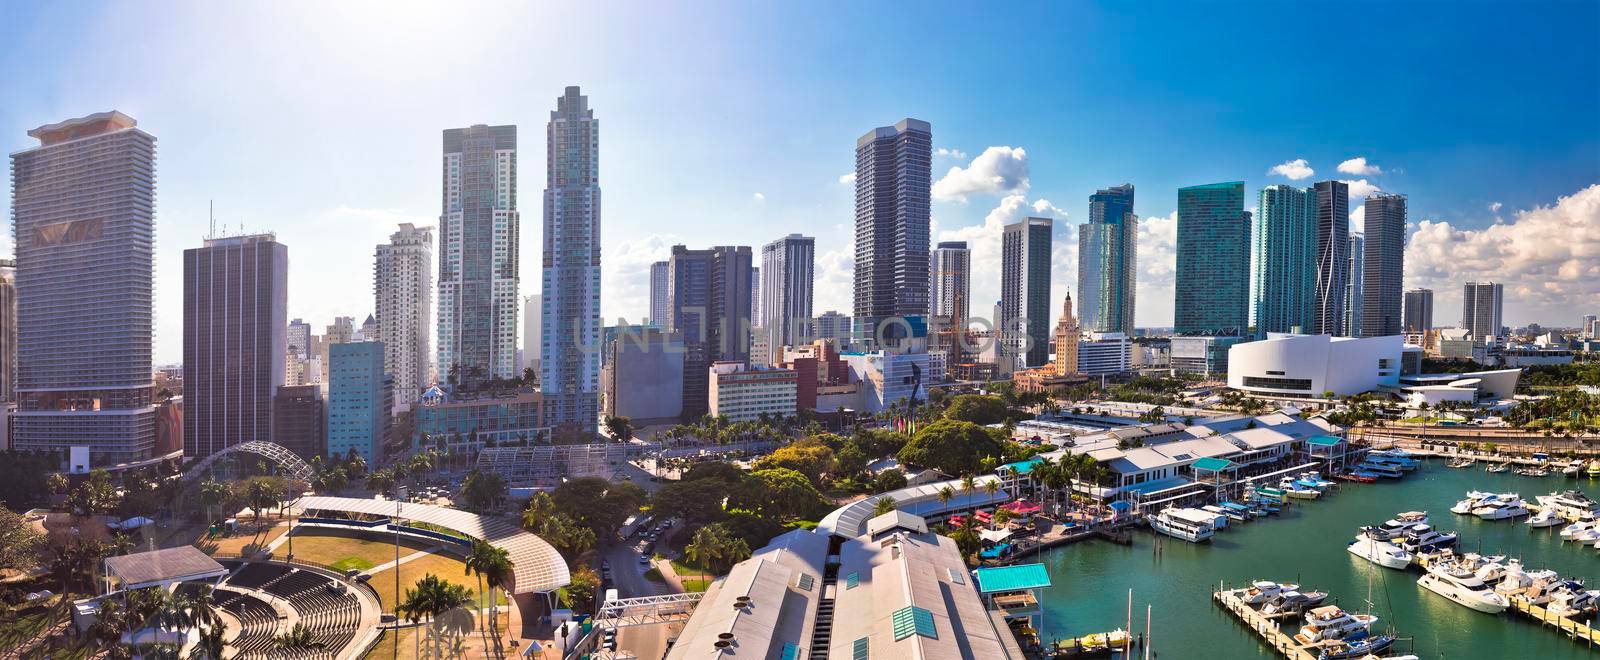 Miami downtown skyline panoramic aerial view by xbrchx